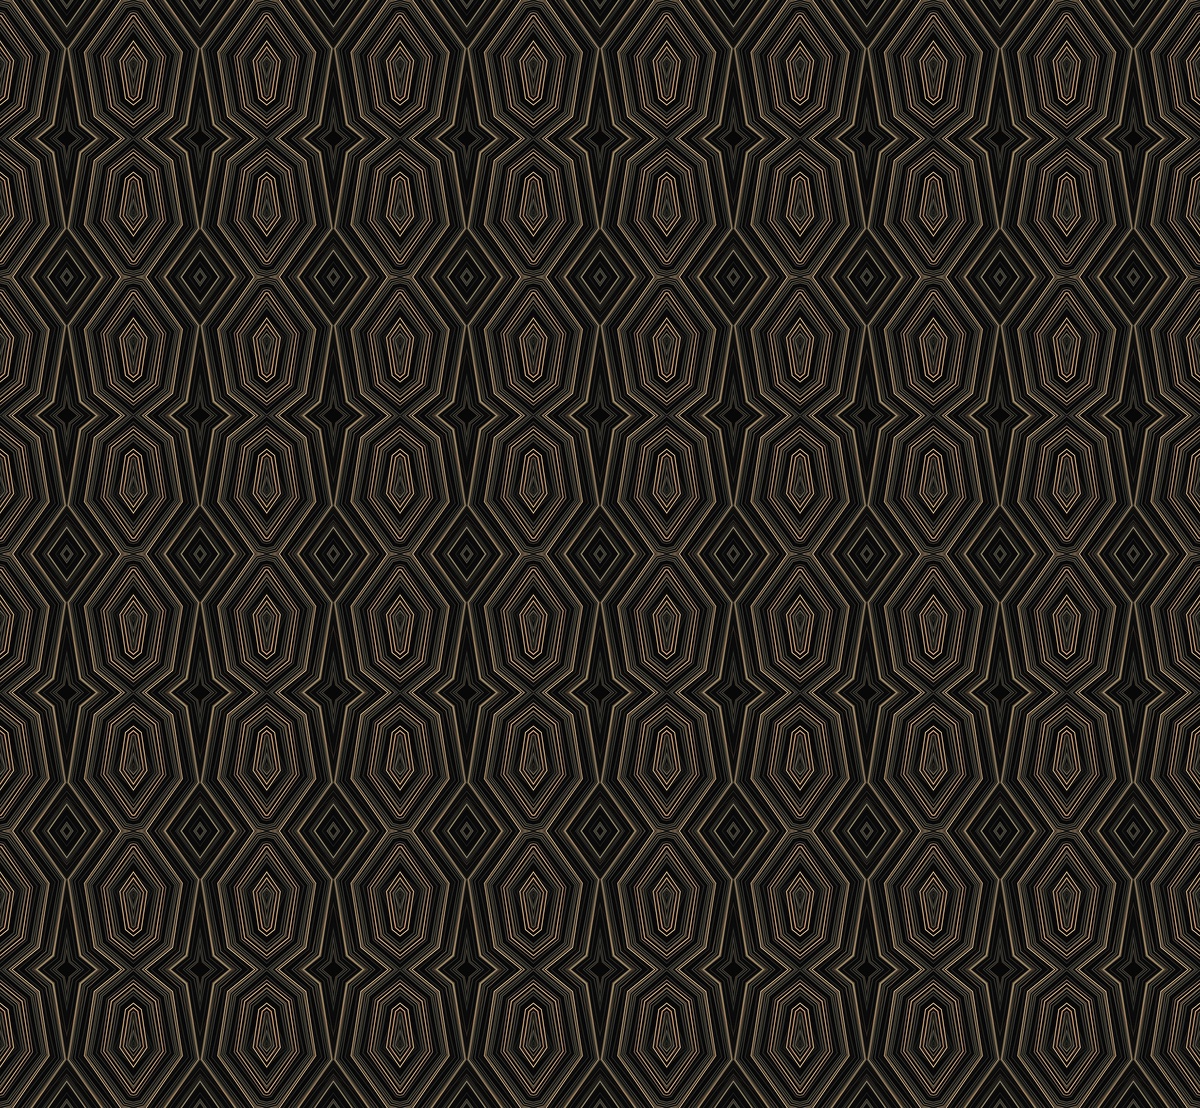 Keyhole pattern in black